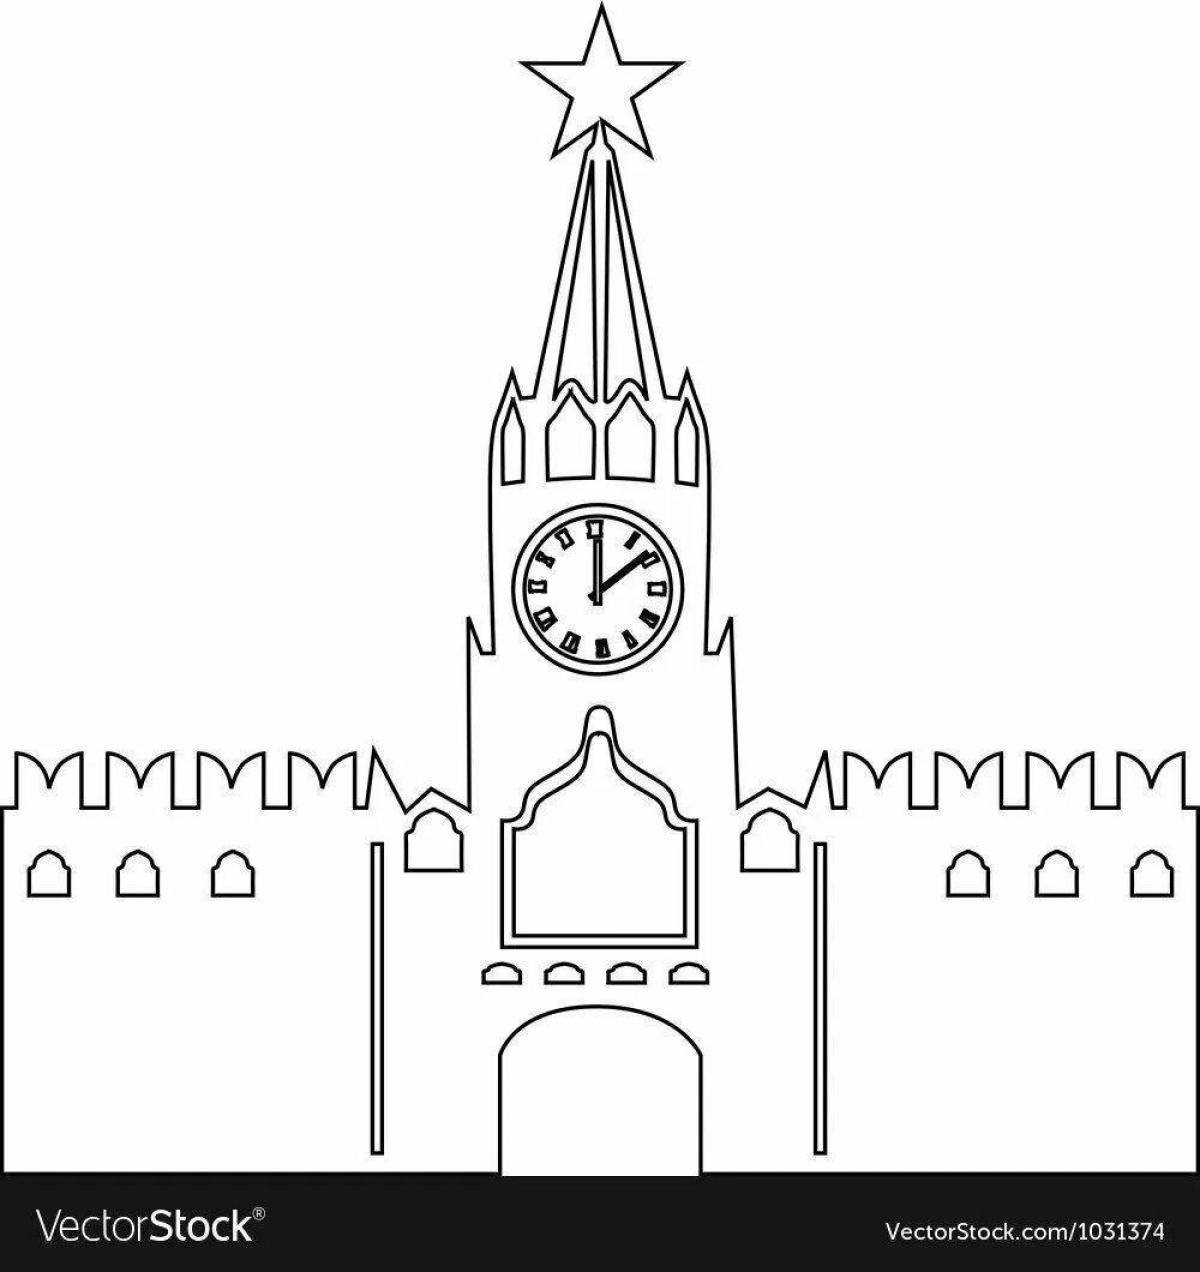 Журнал Бумажное моделирование - 49 - Спасская и сенатская башни из бумаги и картона